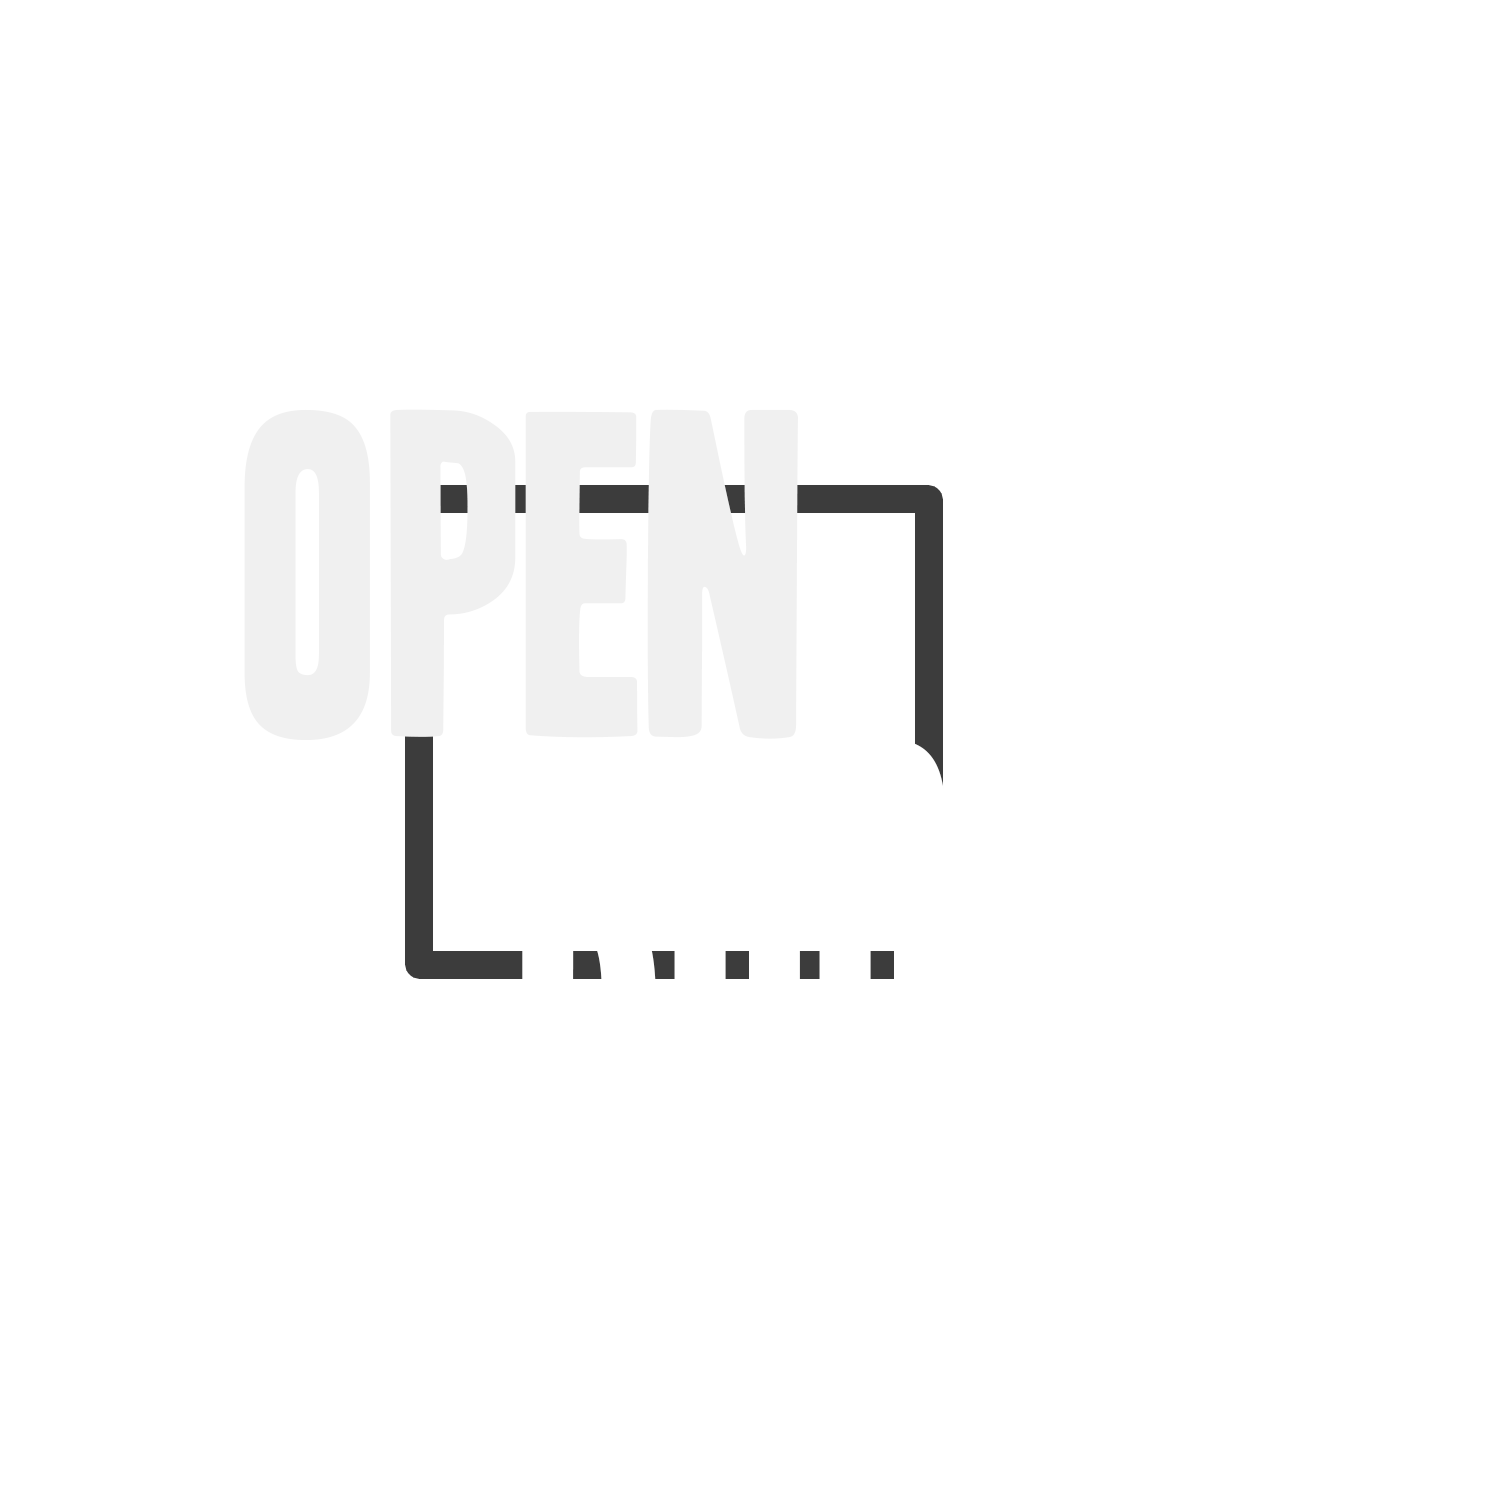 Open Rooms